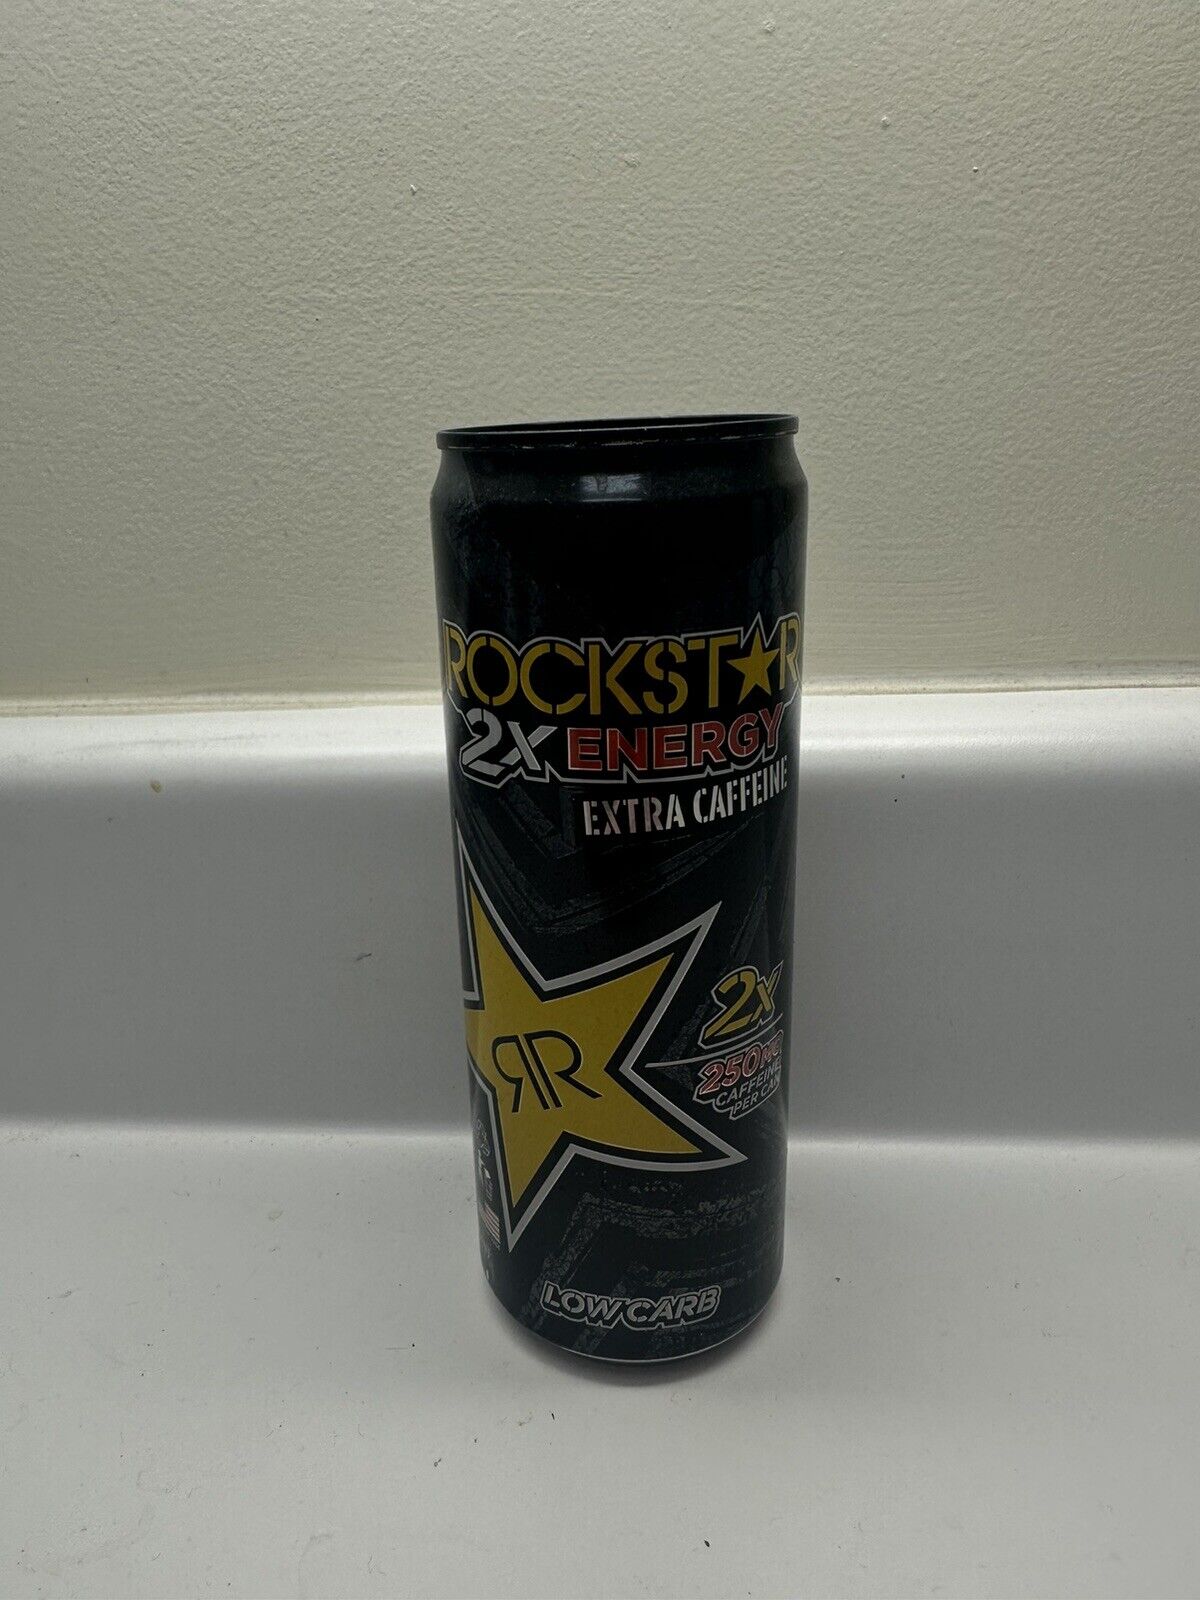 Rockstar 2x Energy Extra Caffeine 12 Oz Can 2010 Rare Empty